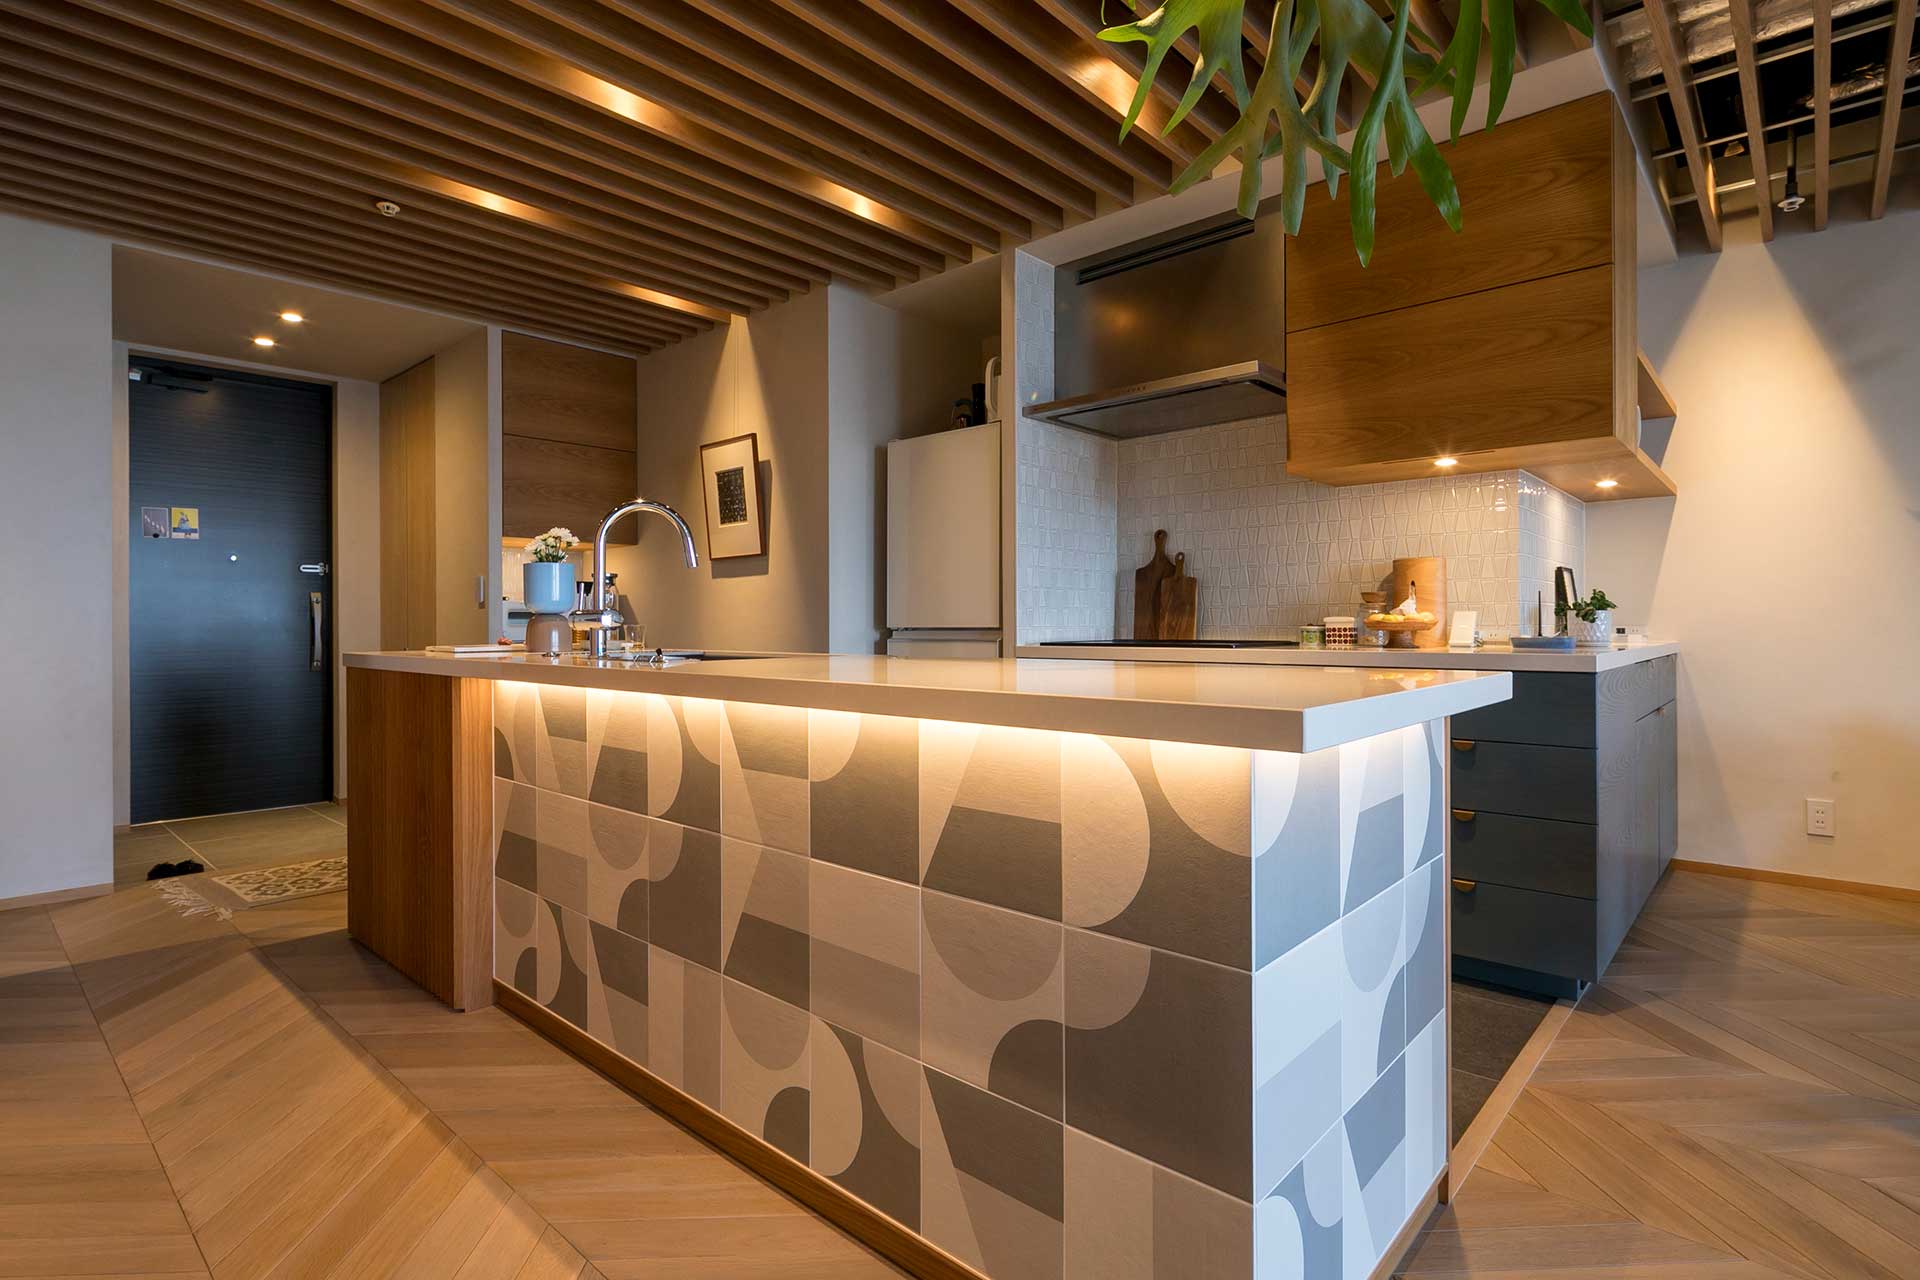 キッチンのパズル型のデザインのタイルが素敵。天板はサイルストーン。天板の裏にタイルを引き立たせる照明を仕込んでいる。タイルと木のバランスが美しい。